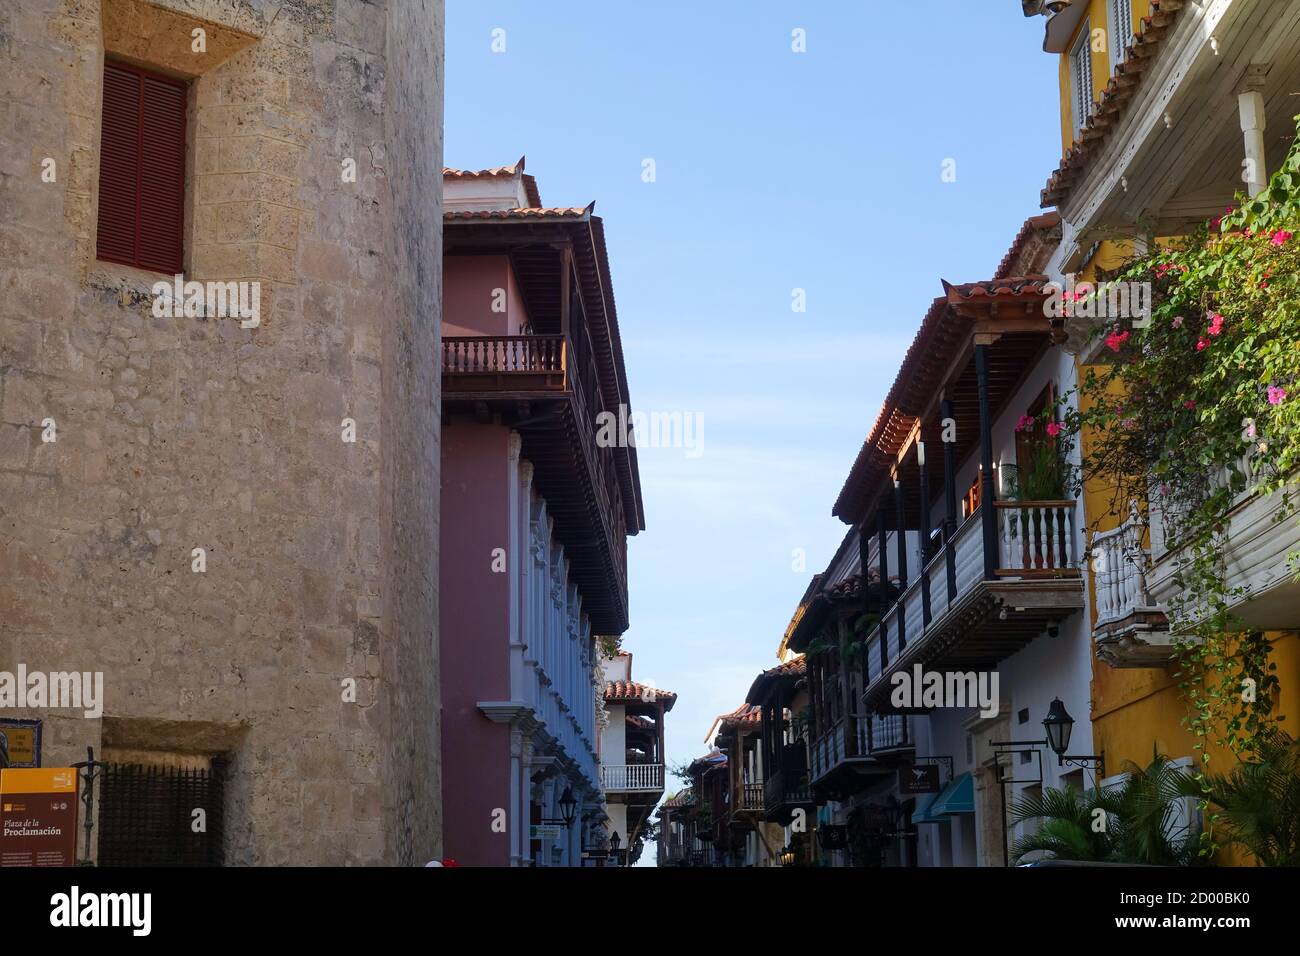 La vieille ville fortifiée est l'une des principales attractions de Carthagène, Colombie 2020 Banque D'Images